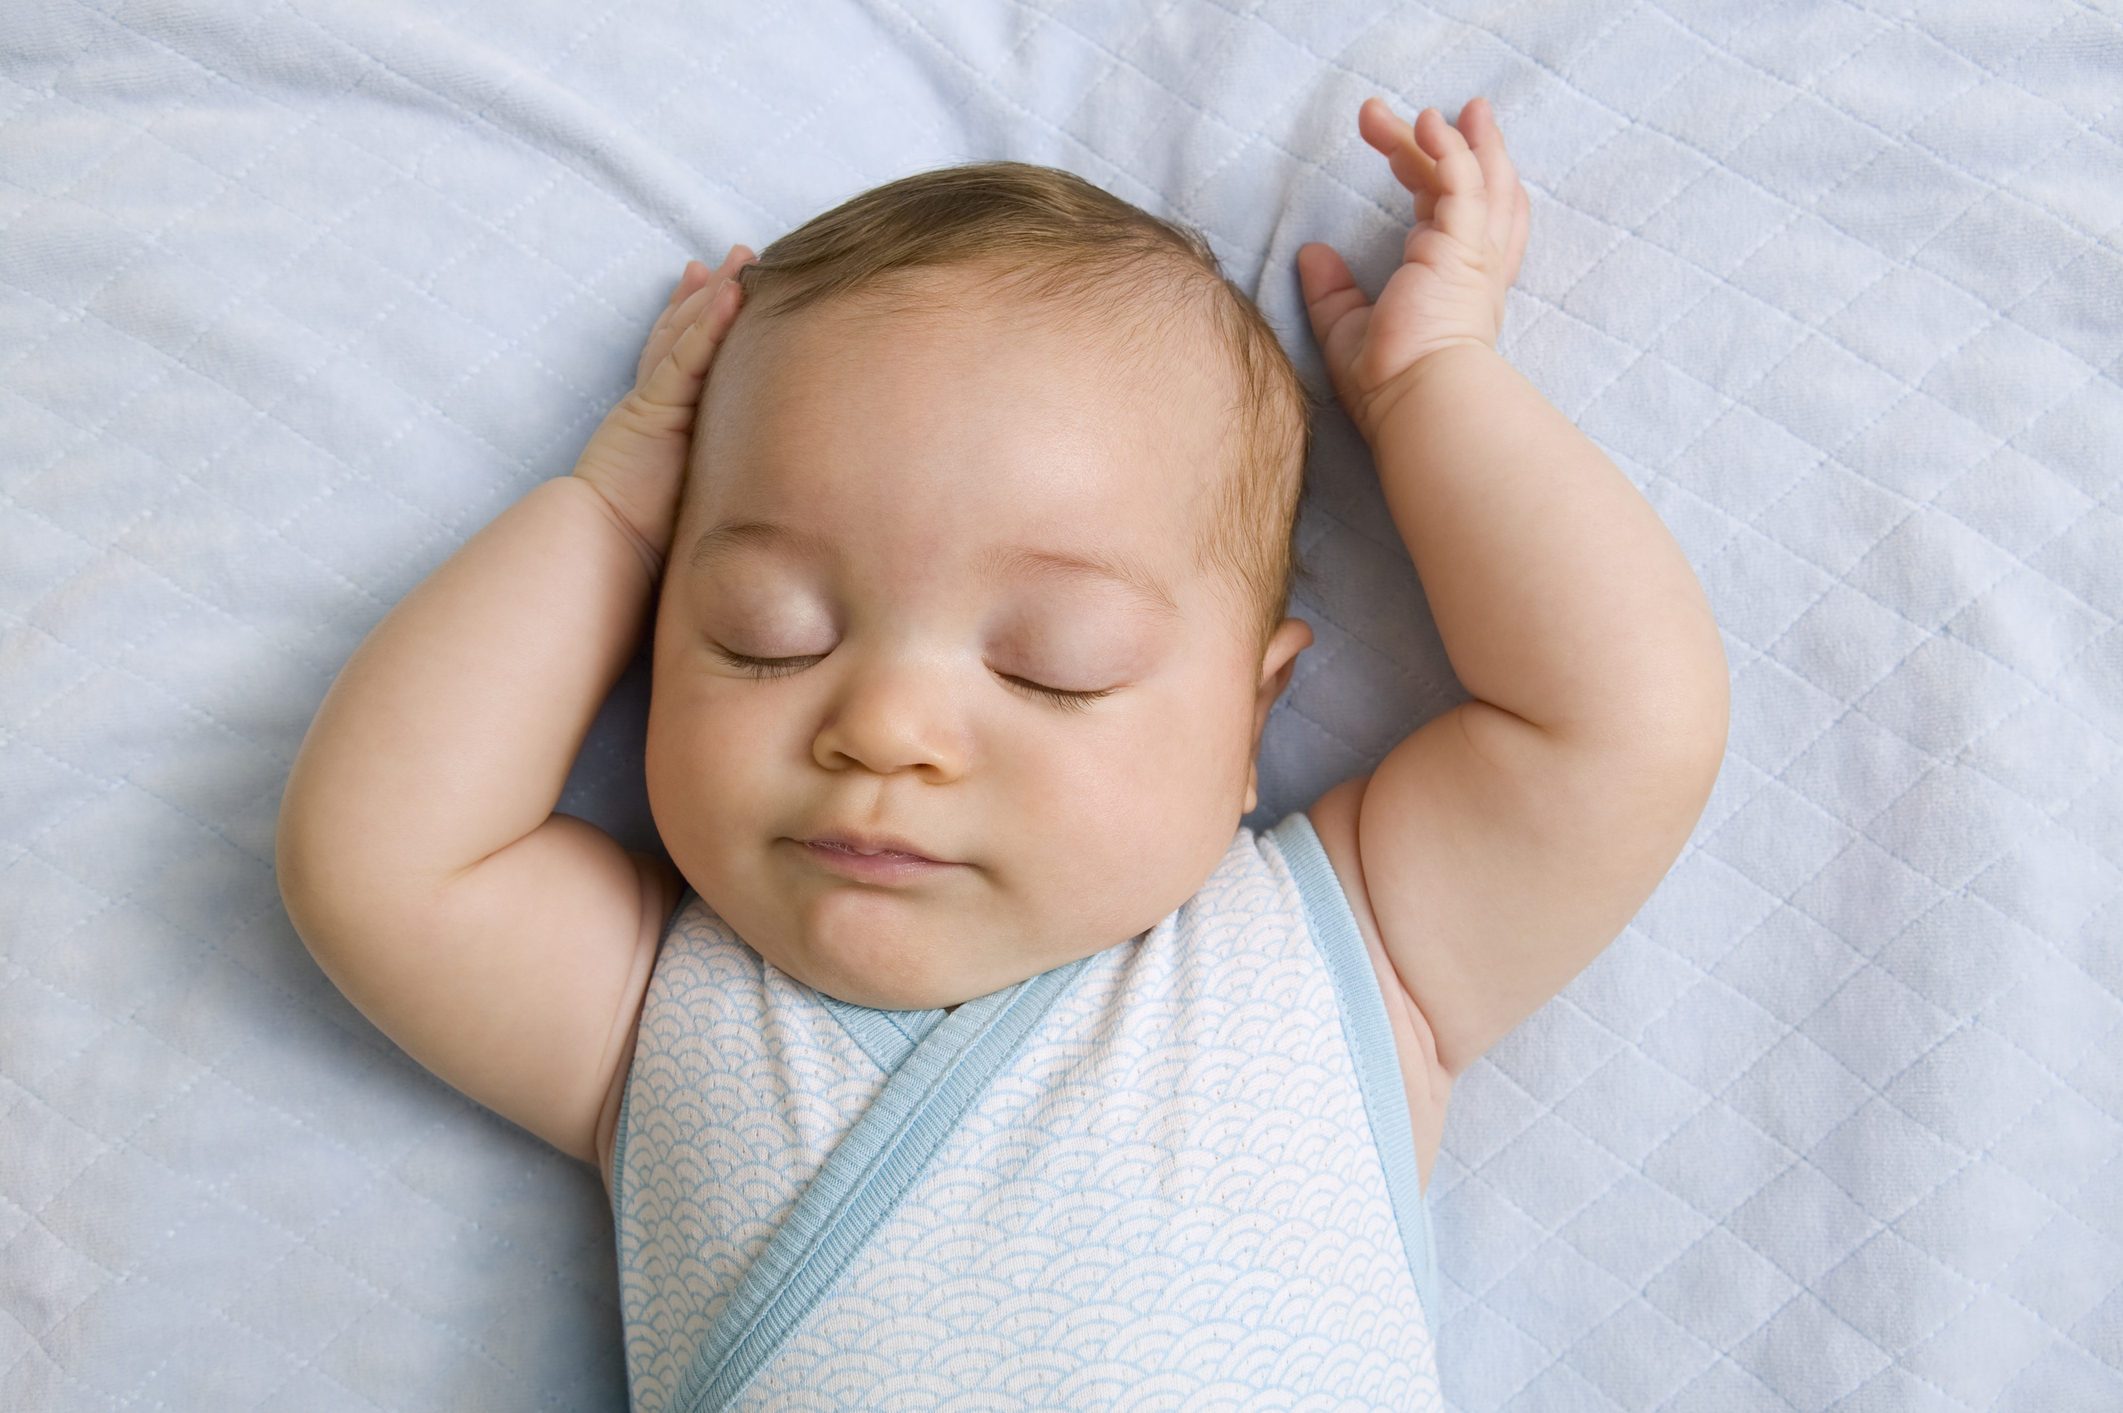 Oreiller bébé anti tête plate - Plusieurs modèles au choix